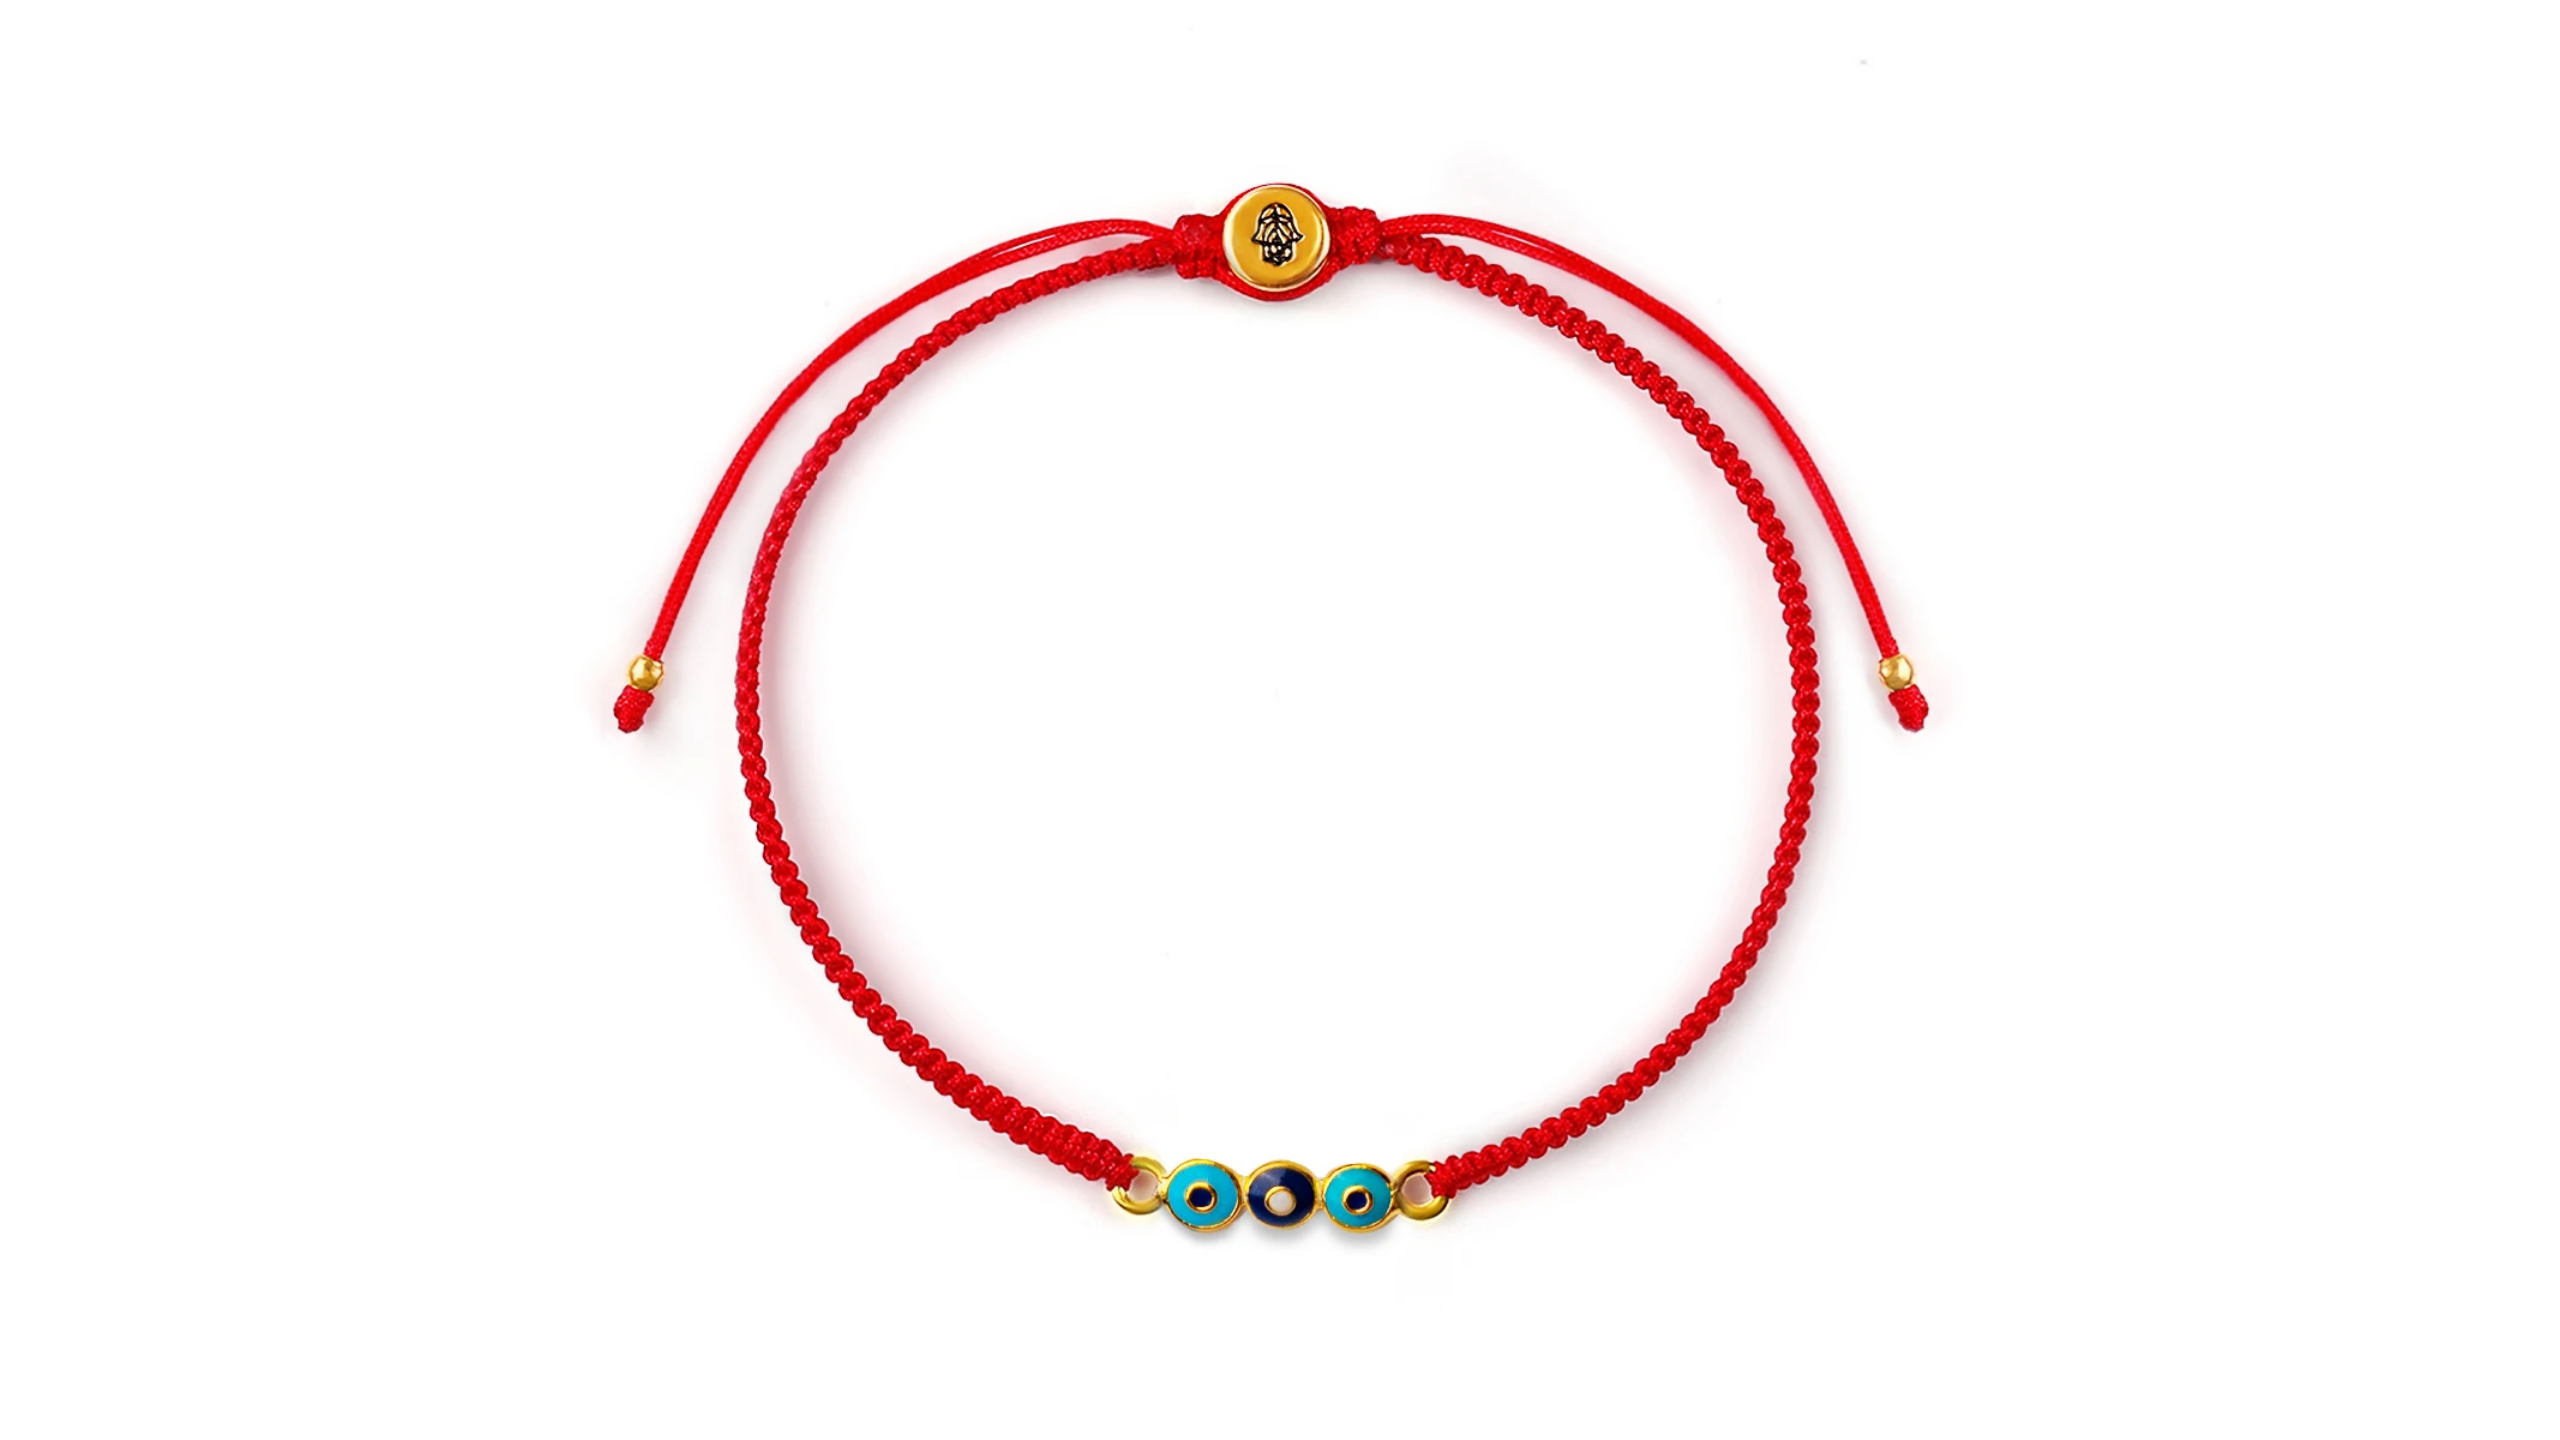 Details about   Lucky Red String Evil Eye Karma Wish Maker Adjustable Bracelet 